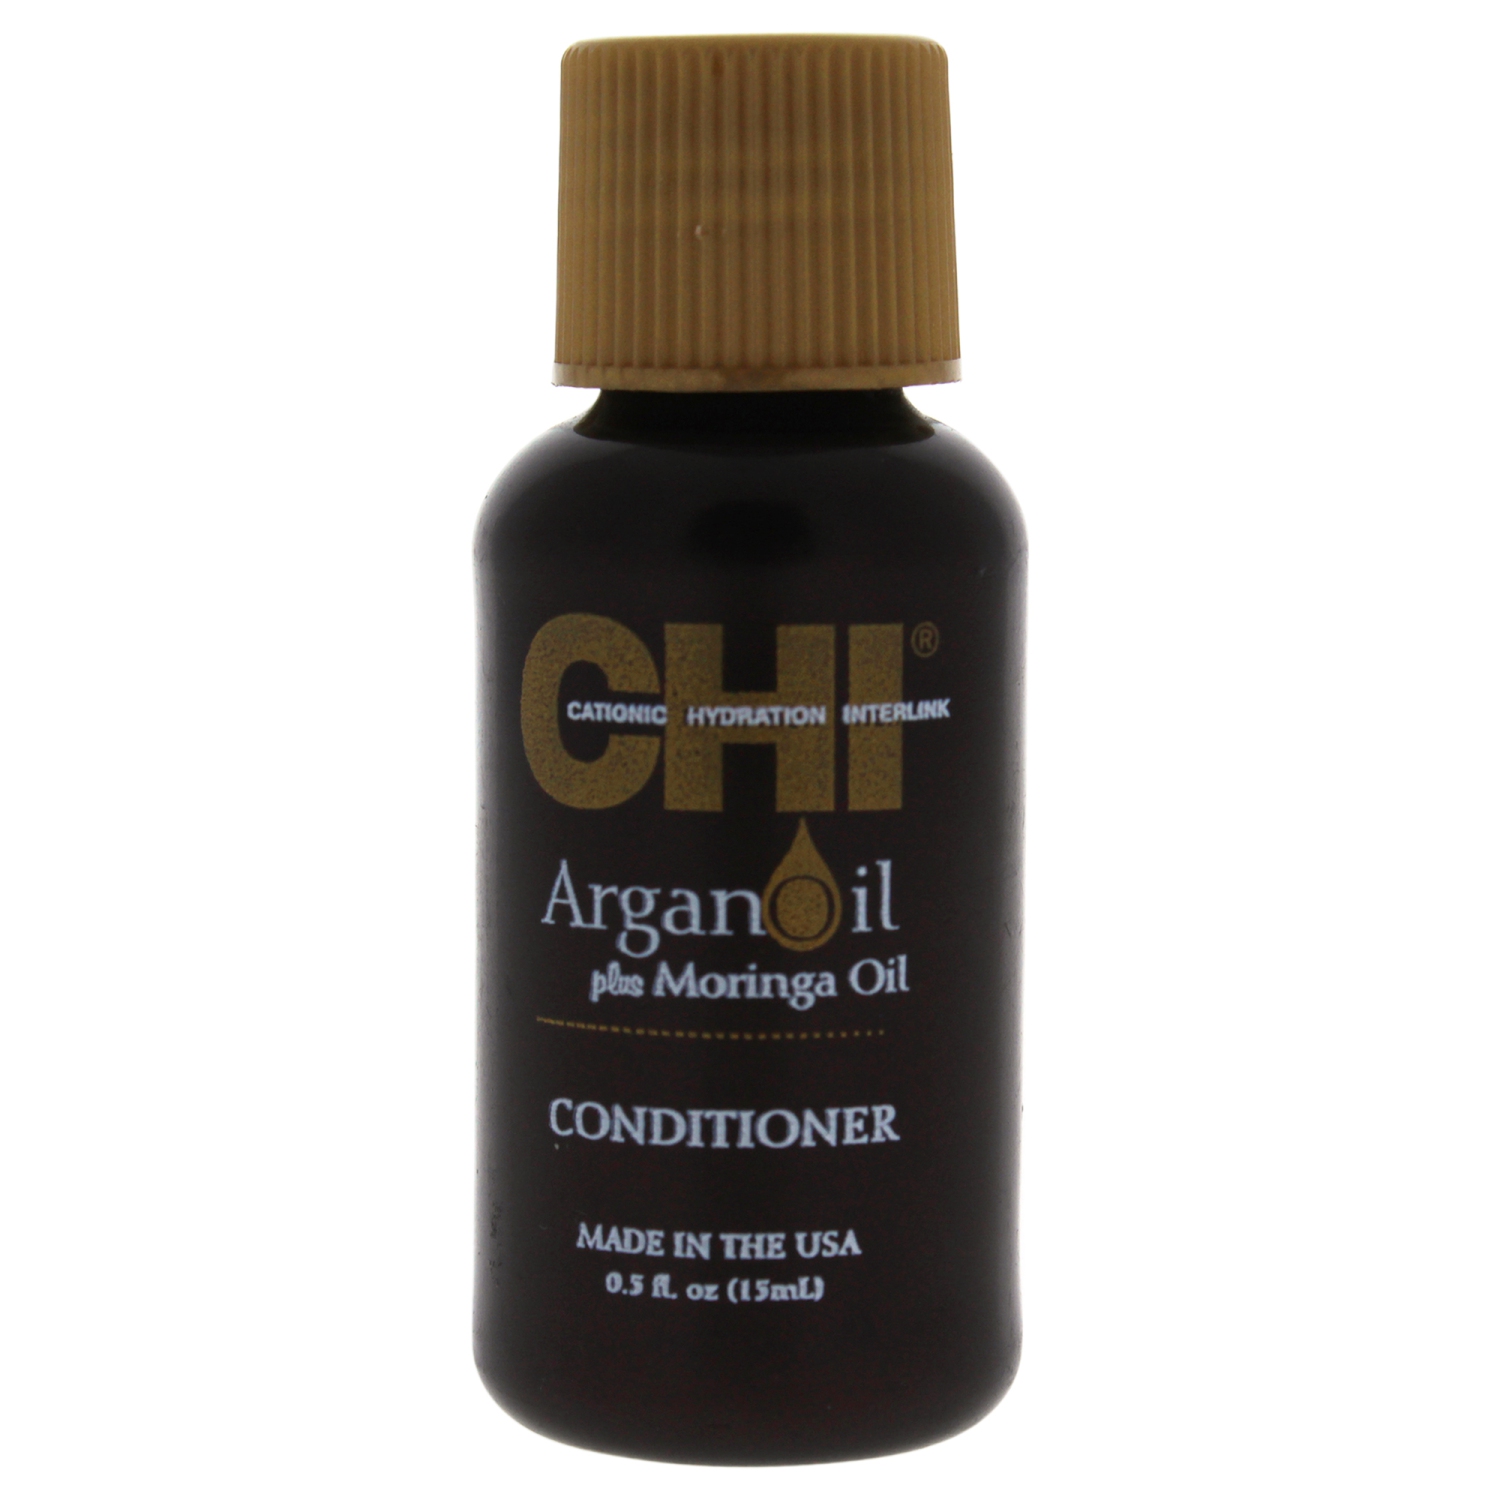 Argan Oil Plus Moringa Oil Conditioner by CHI for Unisex - 0.5 oz Conditioner